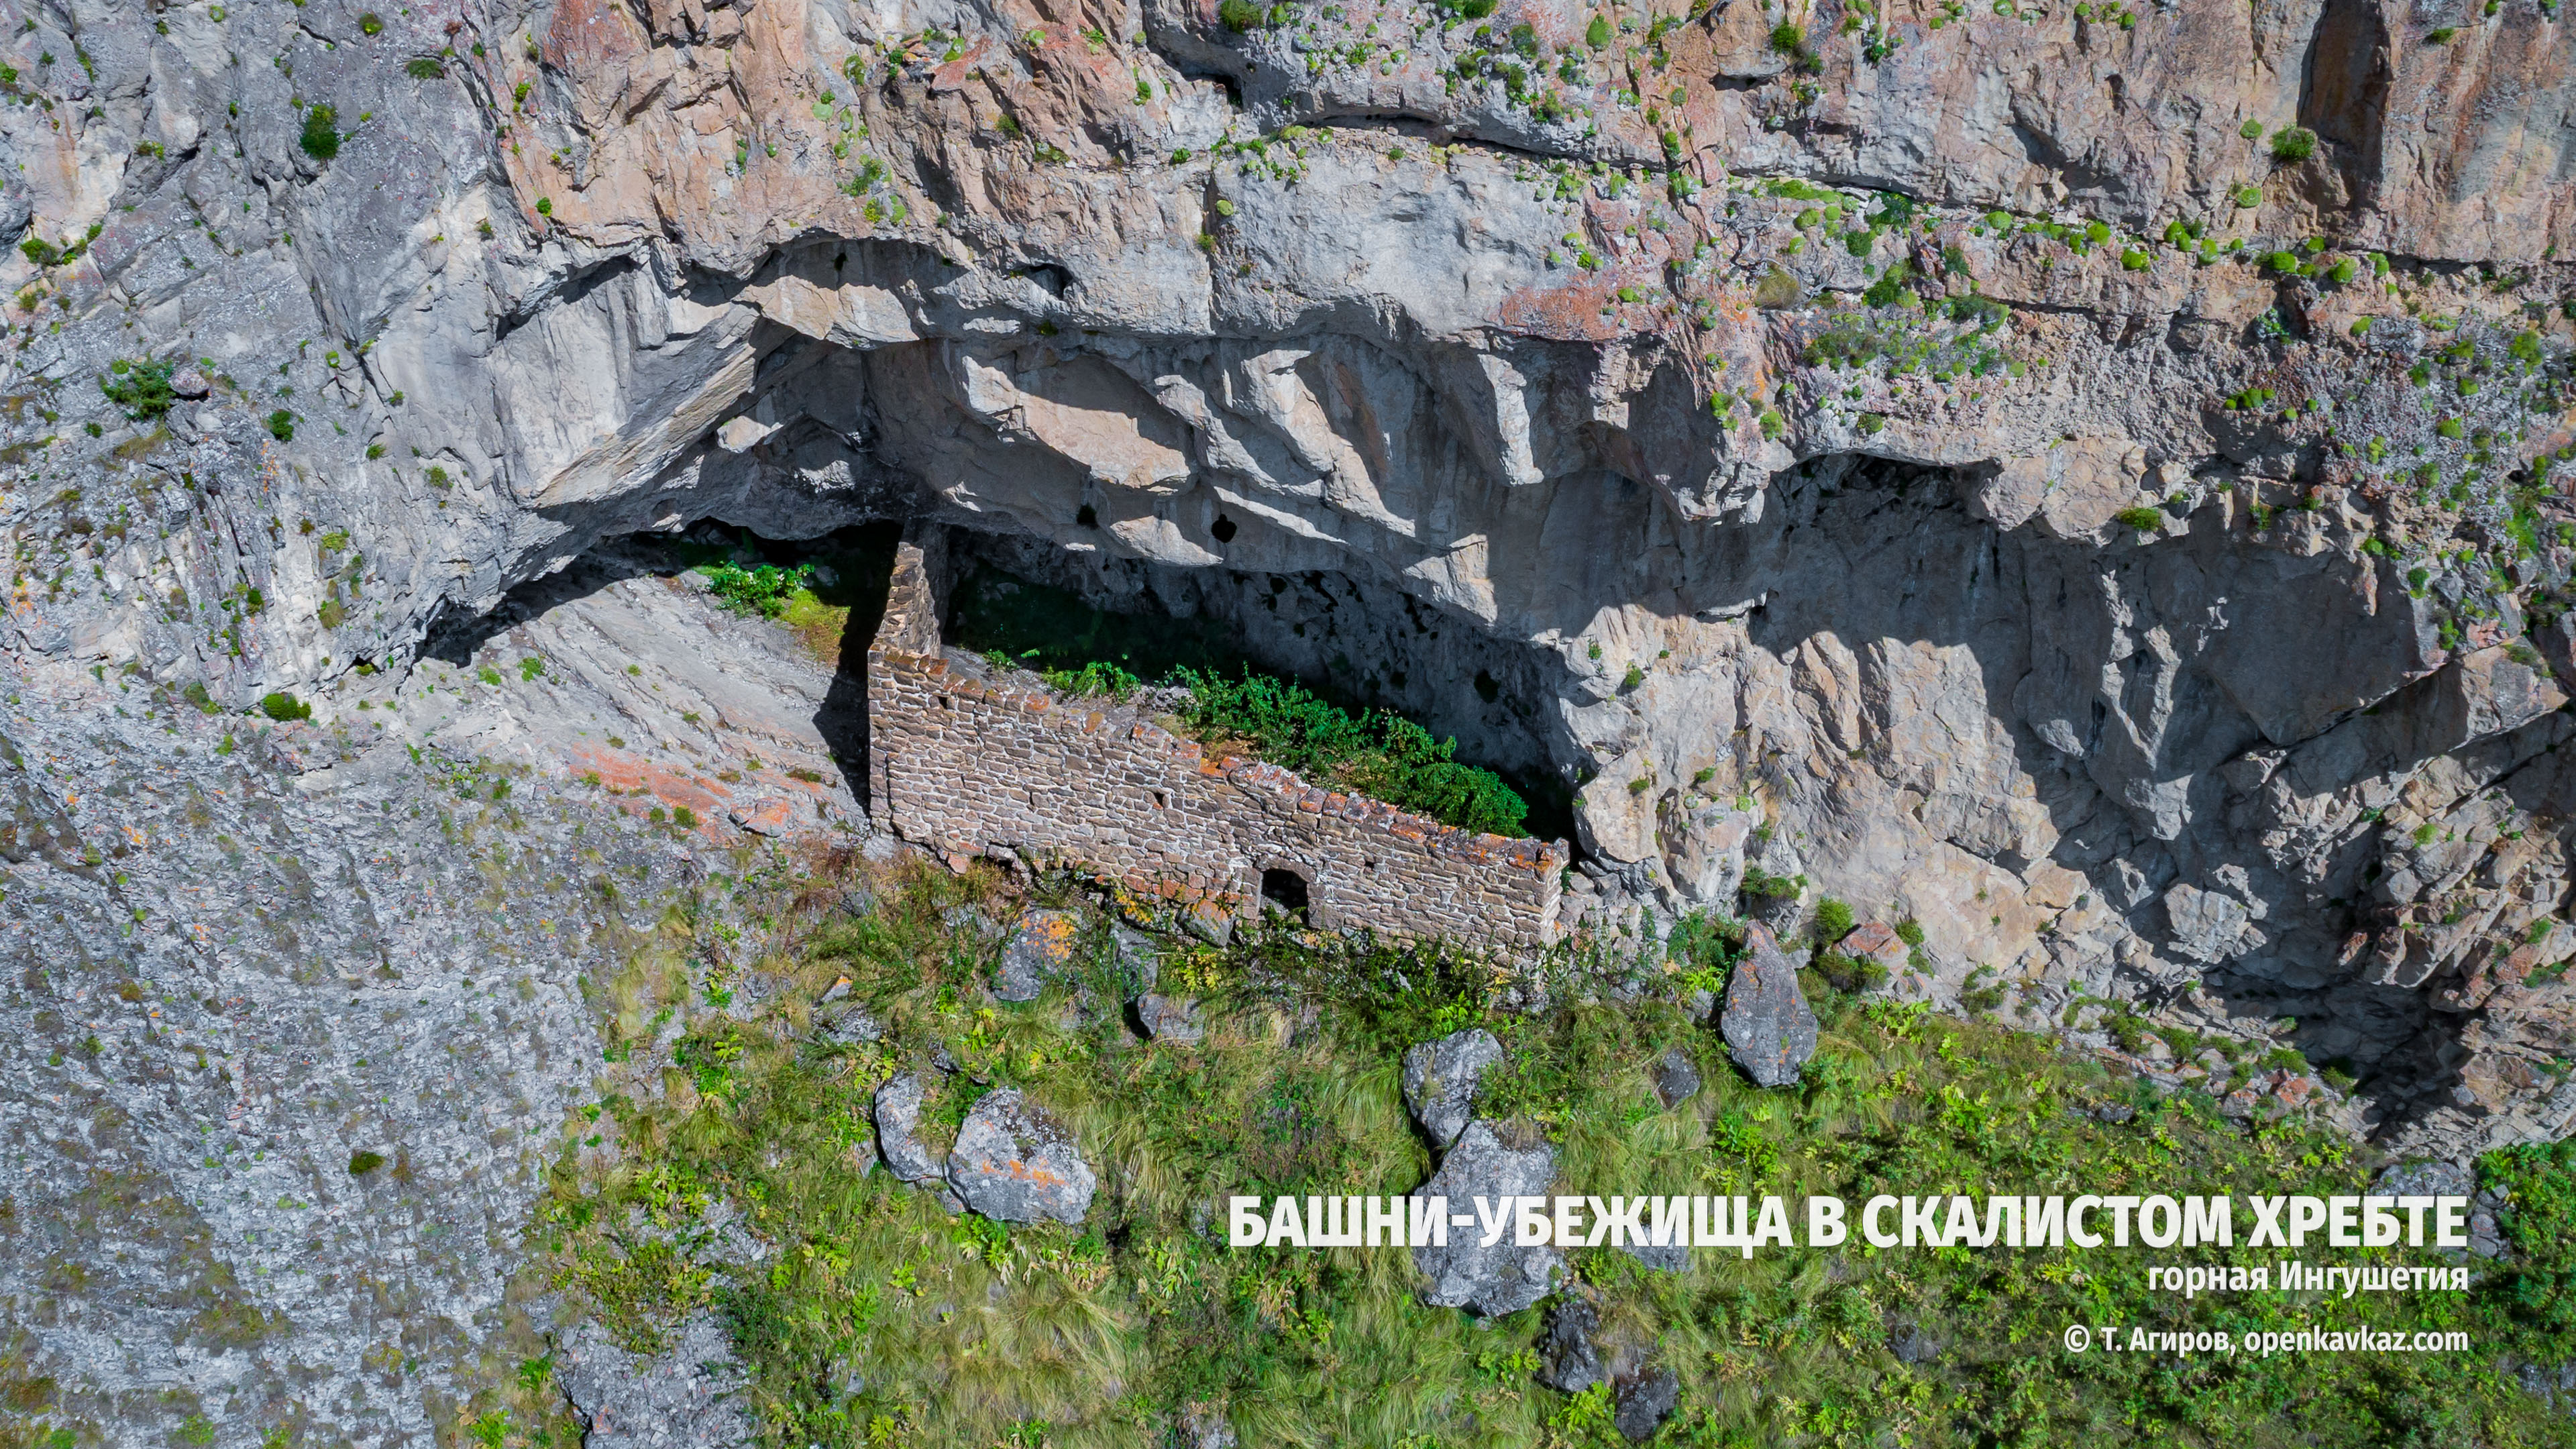 Восемь башен-убежищ в пещерах Скалистого хребта, Ингушетия